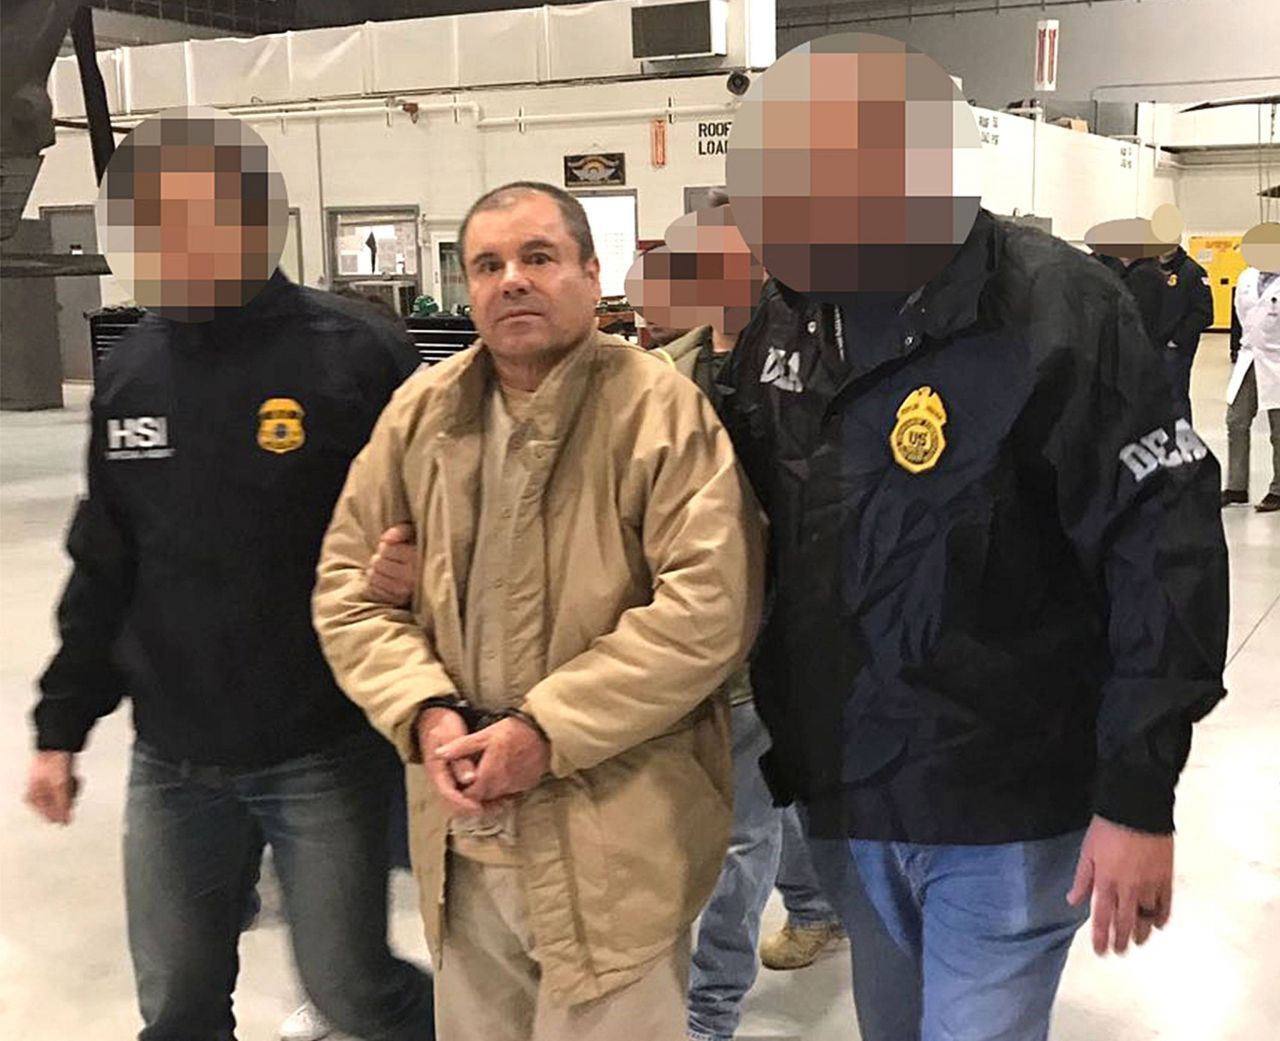 Nachdem der Drogenboss El Chapo bereits zweimal aus einem mexikanischen Gefängnis entkommen war, wurde er nach seiner dritten Verhaftung im Januar 2017 von Mexiko an die USA ausgeliefert. Dort verurteilte ihn ein New Yorker Gericht im Juli 2019 zu einer lebenslangen Freiheitsstrafe.